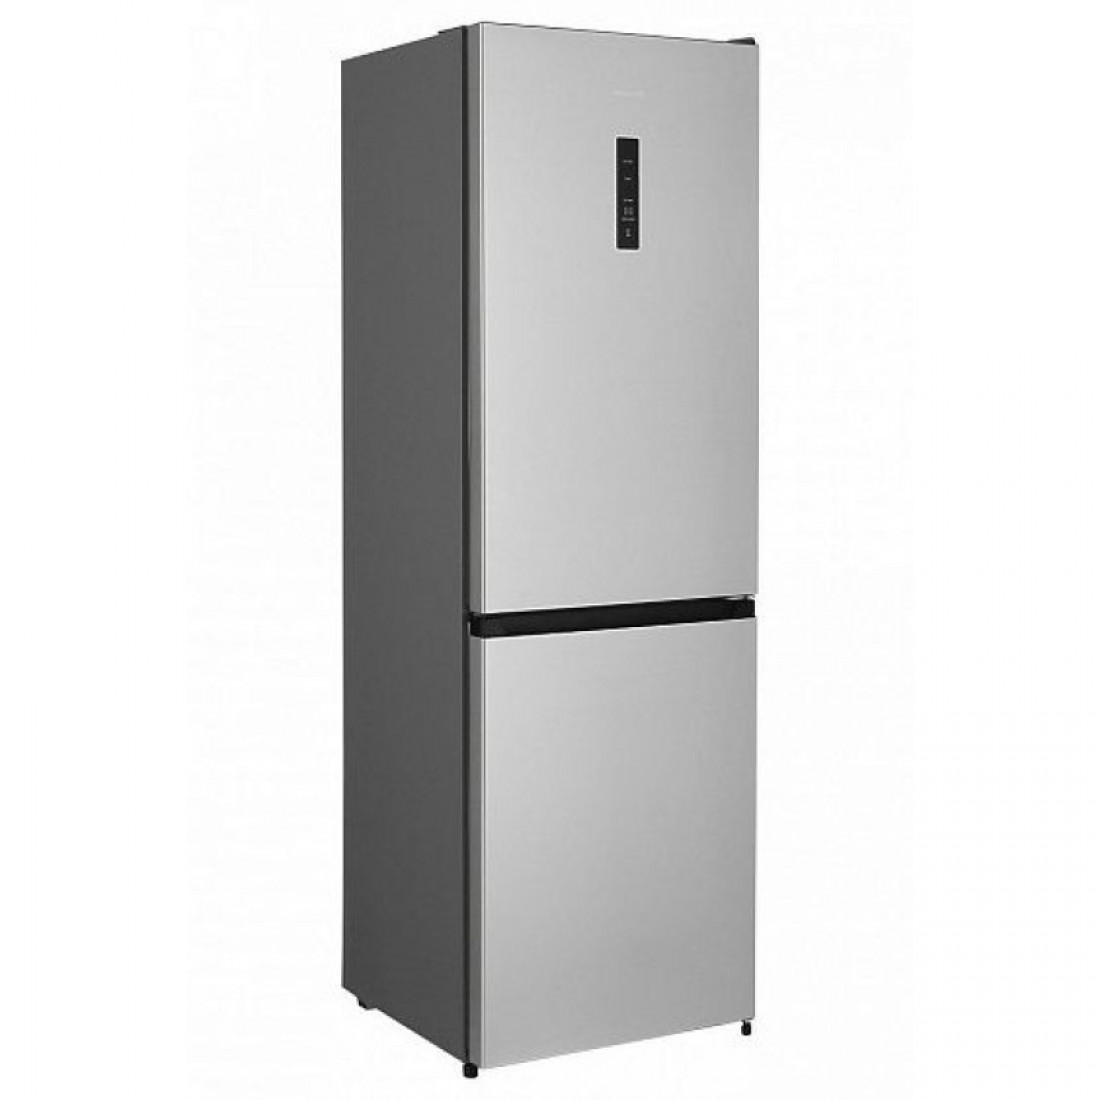 Lg ga b509mqsl. Холодильник LG ga-b509mawl. LG ga-b509caqm. Холодильник LG DOORCOOLING+ ga-b509caqm. Холодильник LG 509 caqm.